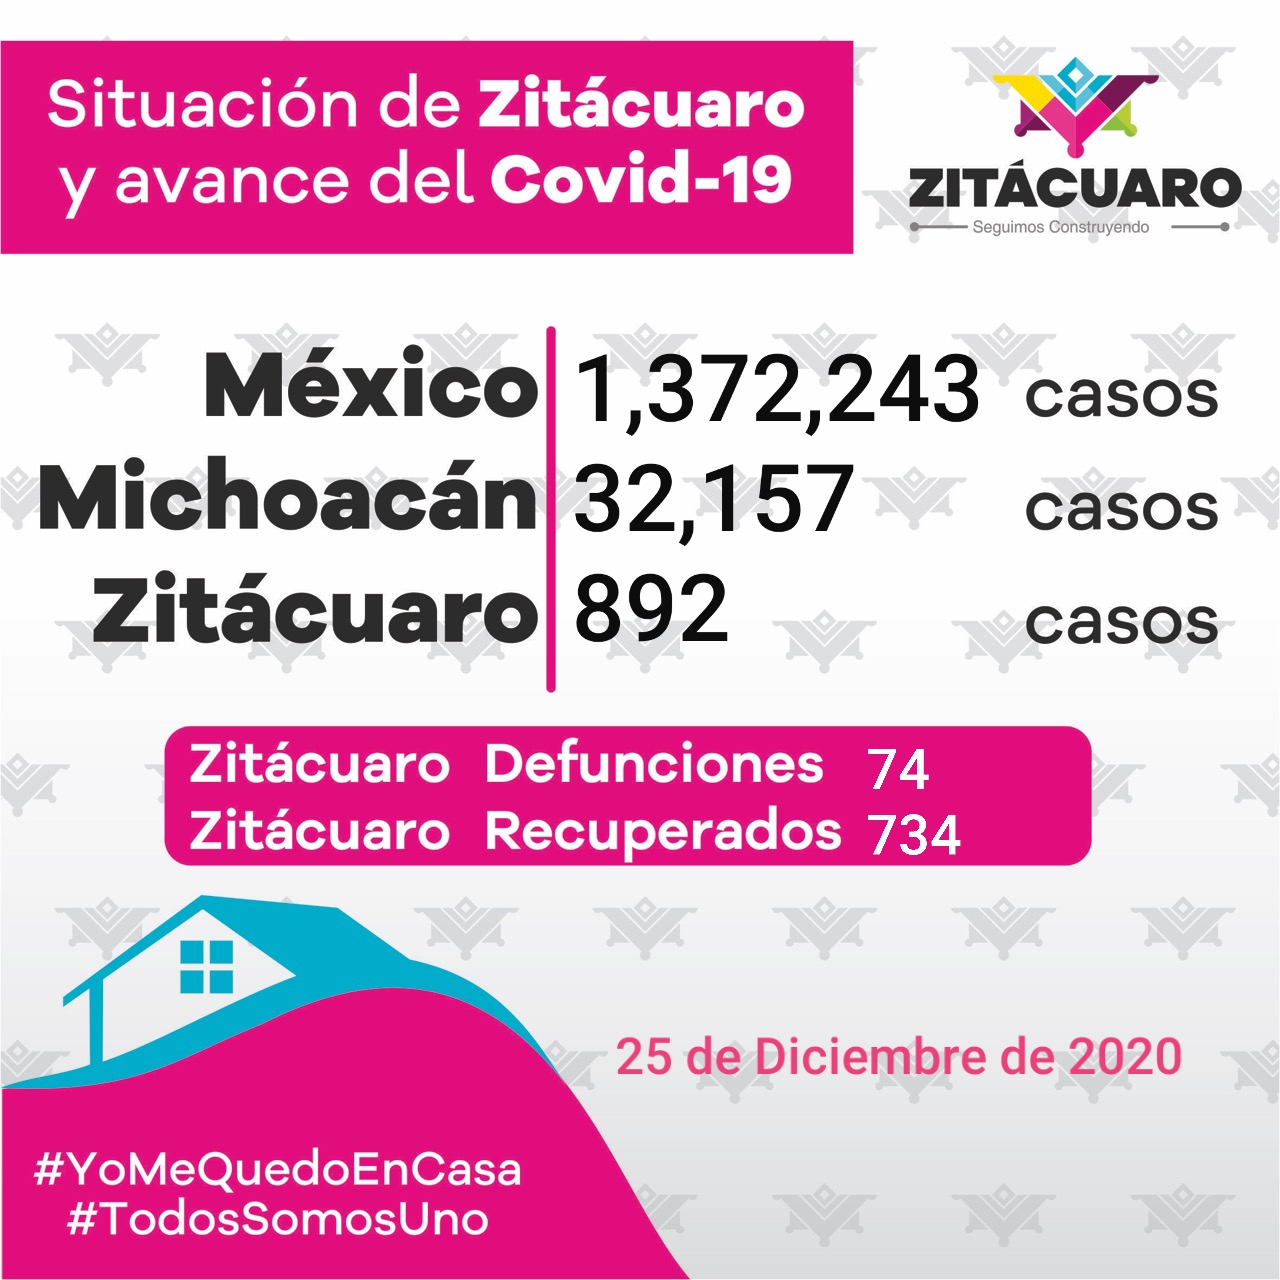 Zitácuaro sigue en riesgo con 892 casos de COVID – 19